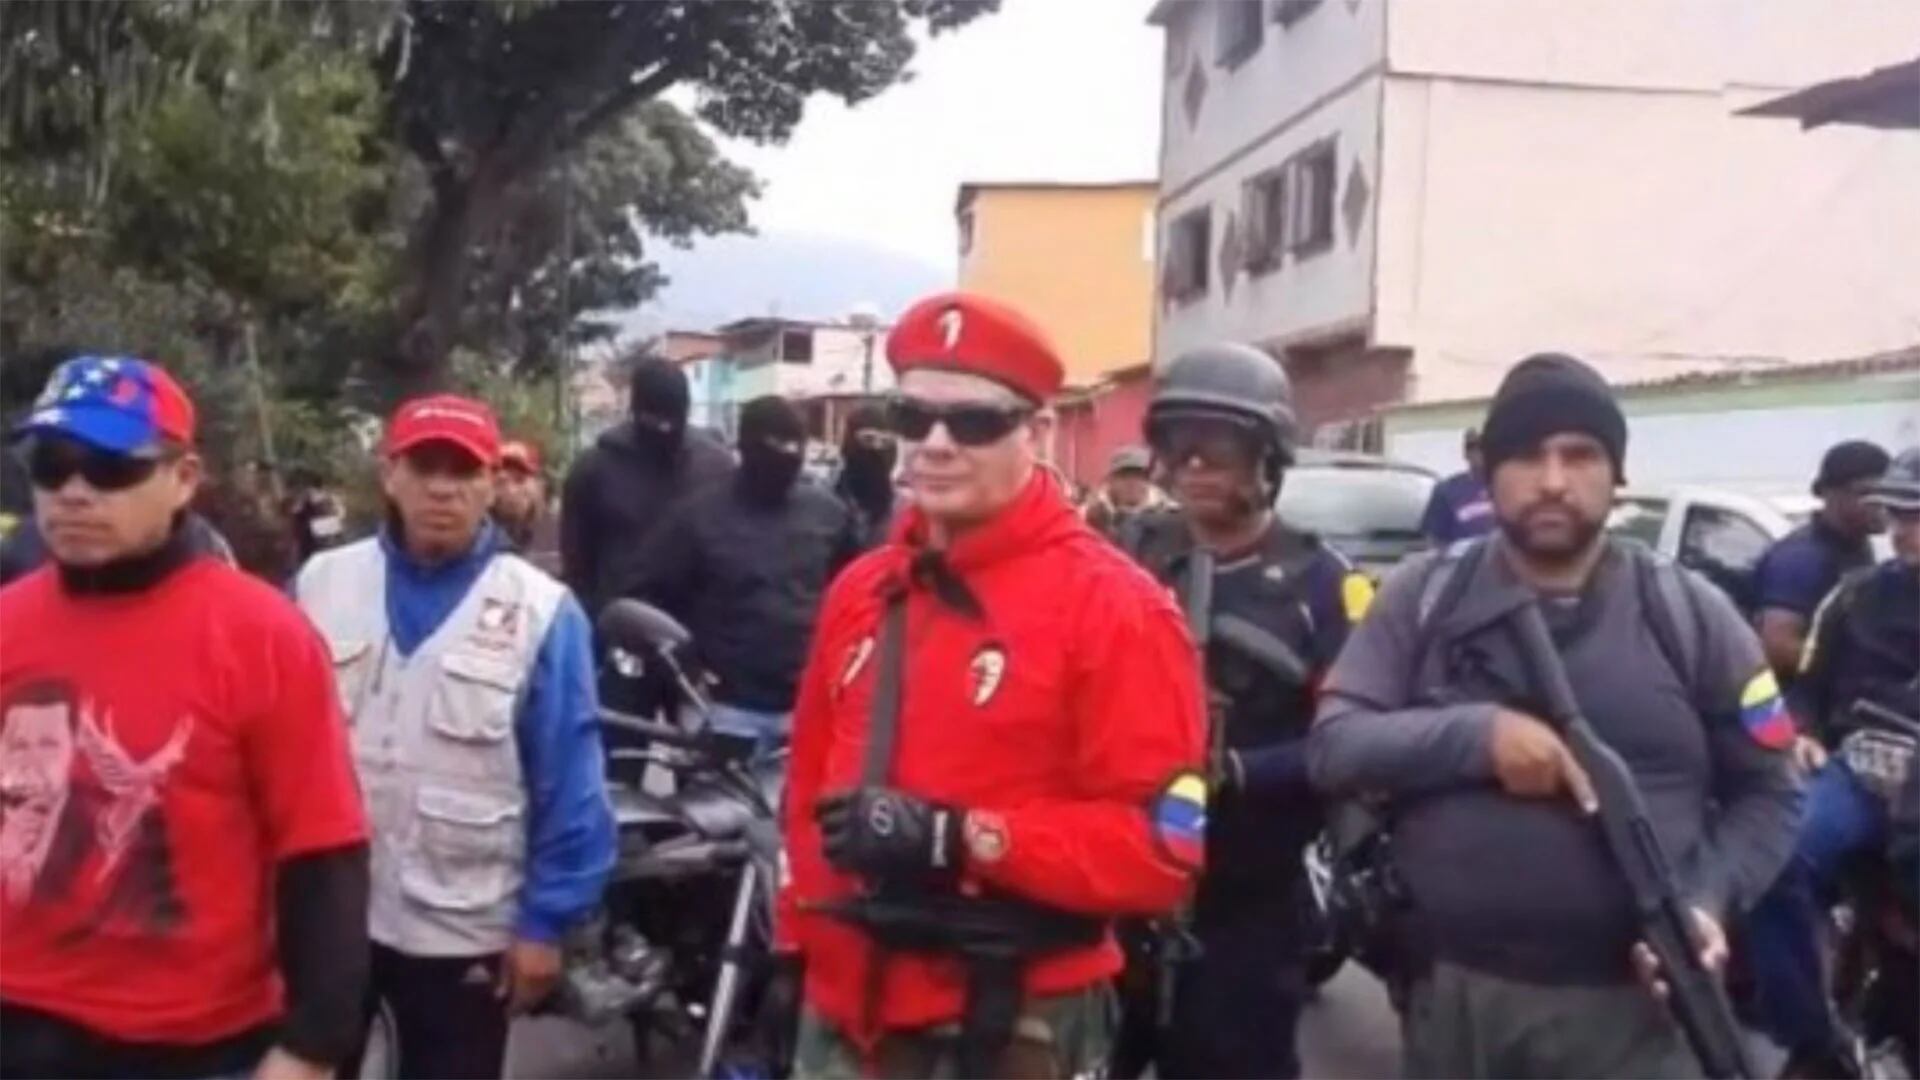 Grupos colectivos han sido brazo armado del régimen venezolano